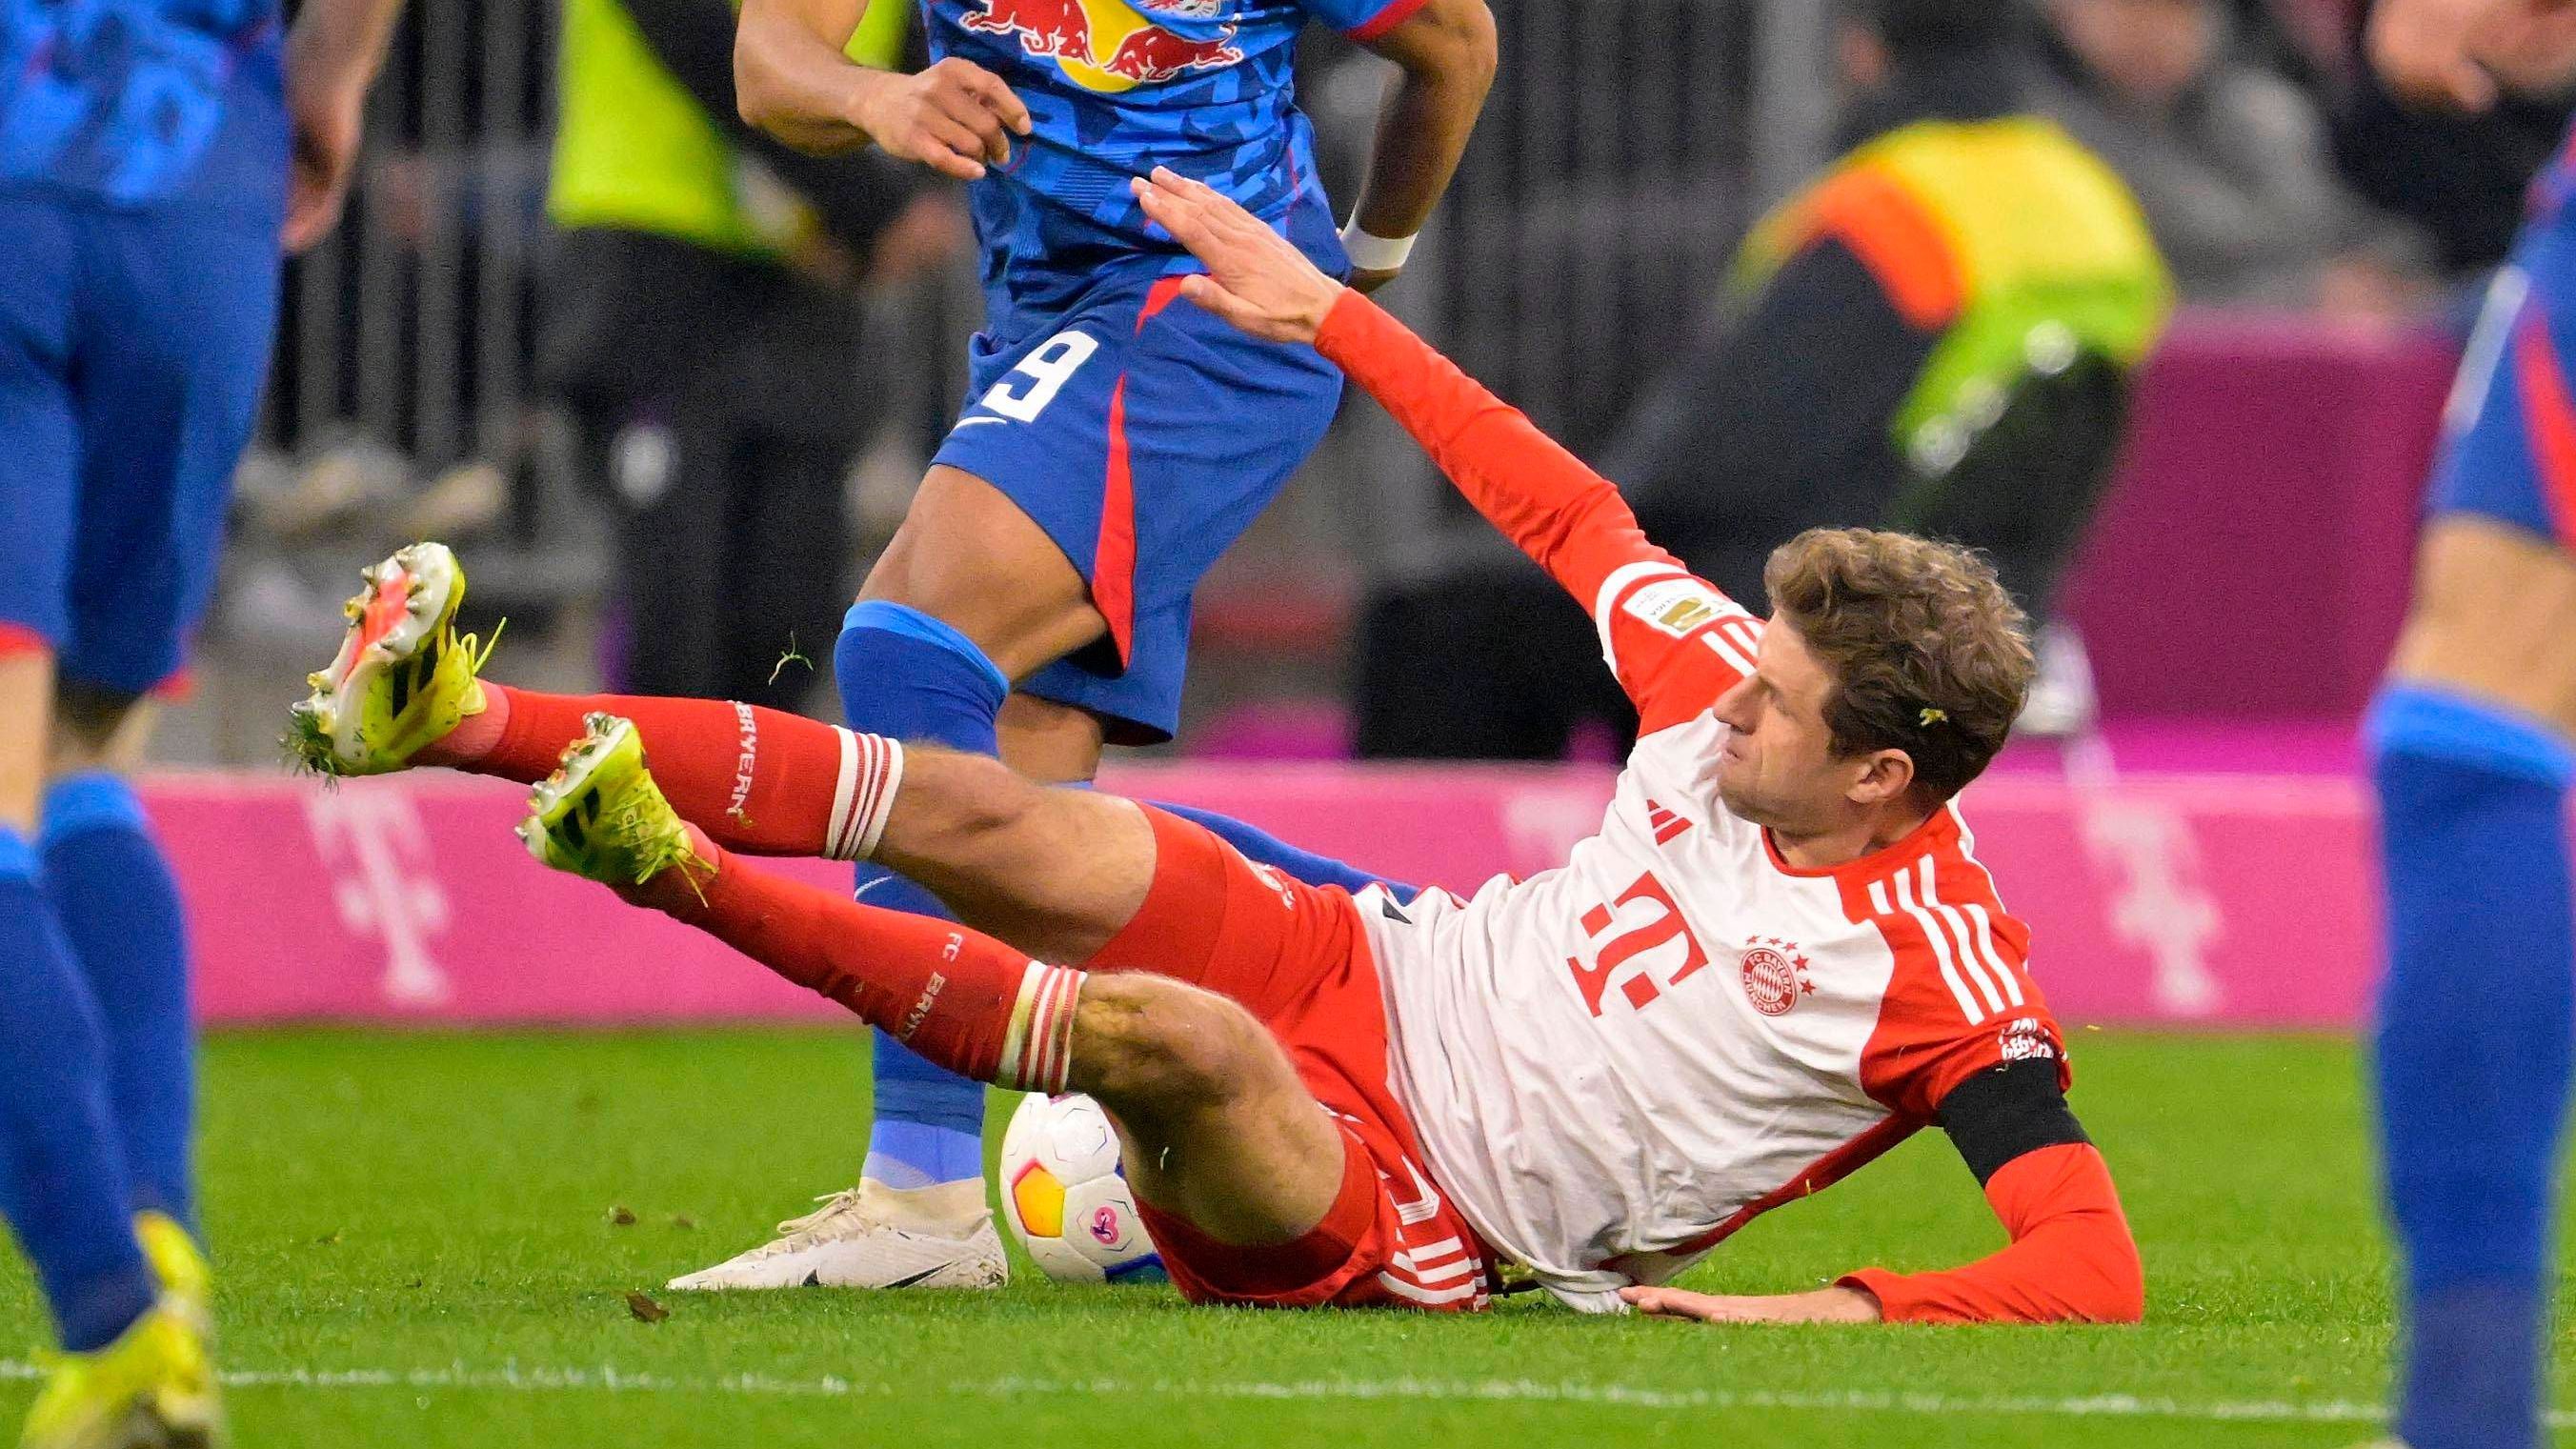 <strong>Thomas Müller (FC Bayern)</strong><br>Das Engagement ist dem Routinier wie immer nicht abzusprechen, allerdings bekommt er bis zu seiner Auswechslung nach 64 Minuten keinen Zugriff aufs Spiel. Viele Fehlpässe, kaum gelungene Aktionen. <em><strong>ran</strong></em>-Note: 5